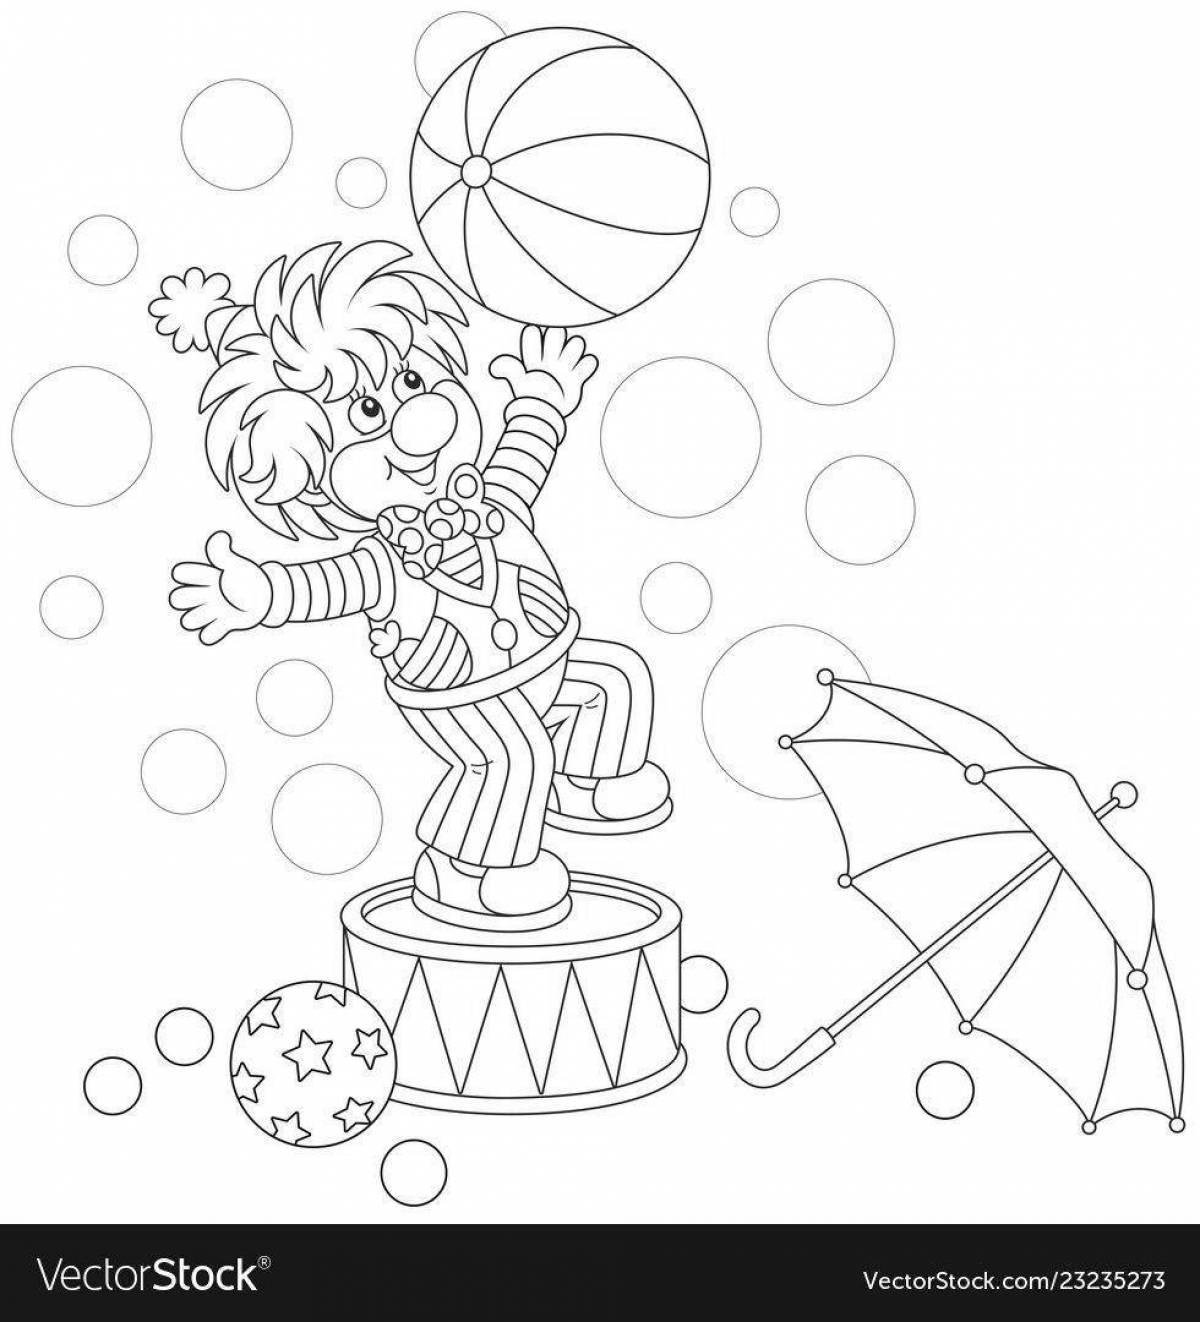 Анимированная страница-раскраска для детей из цирка